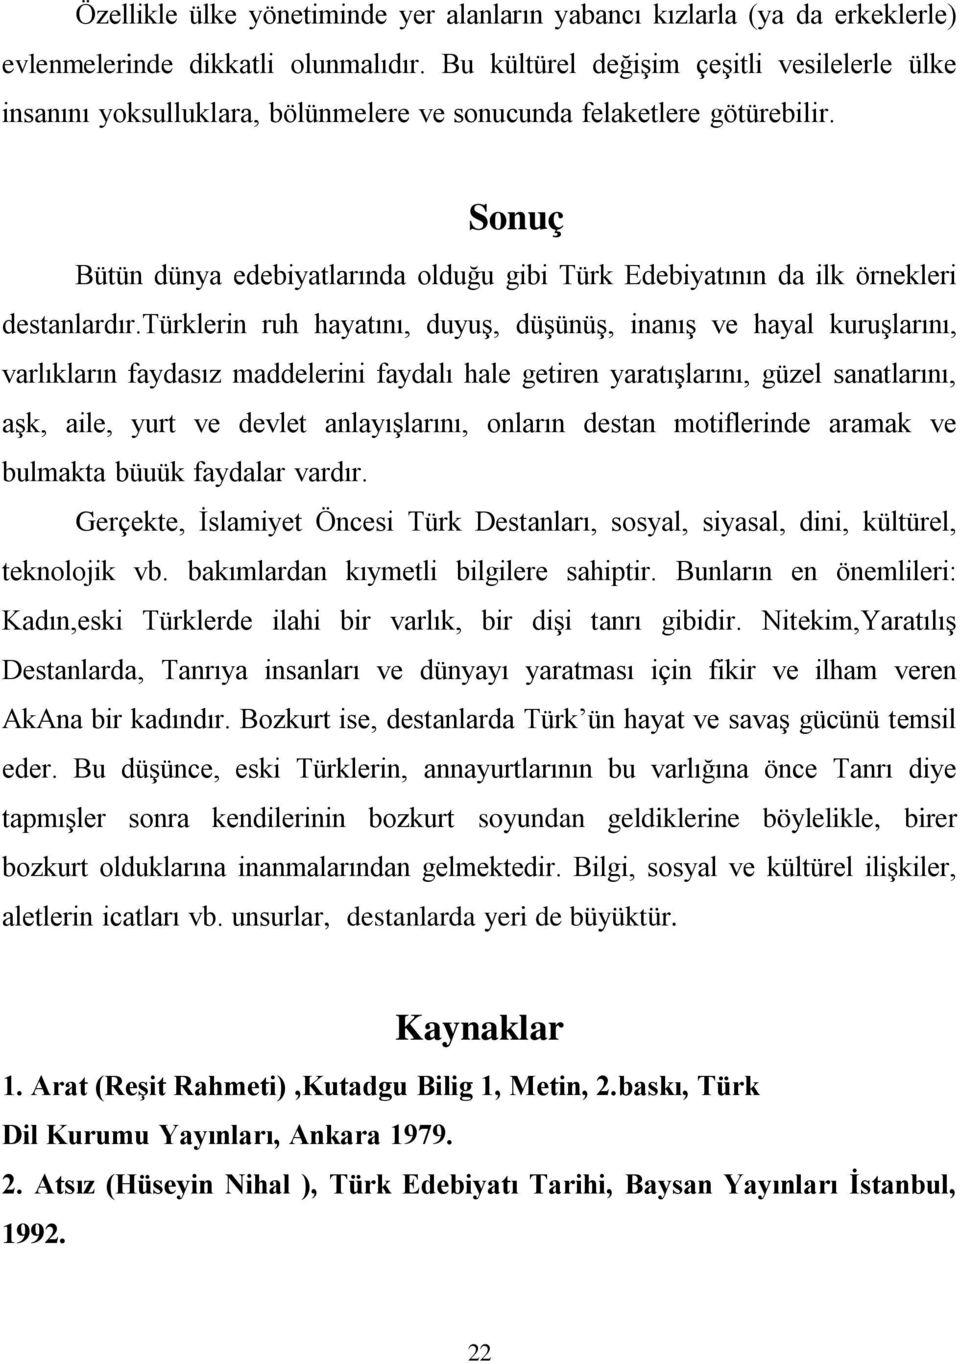 Sonuç Bütün dünya edebiyatlarında olduğu gibi Türk Edebiyatının da ilk örnekleri destanlardır.